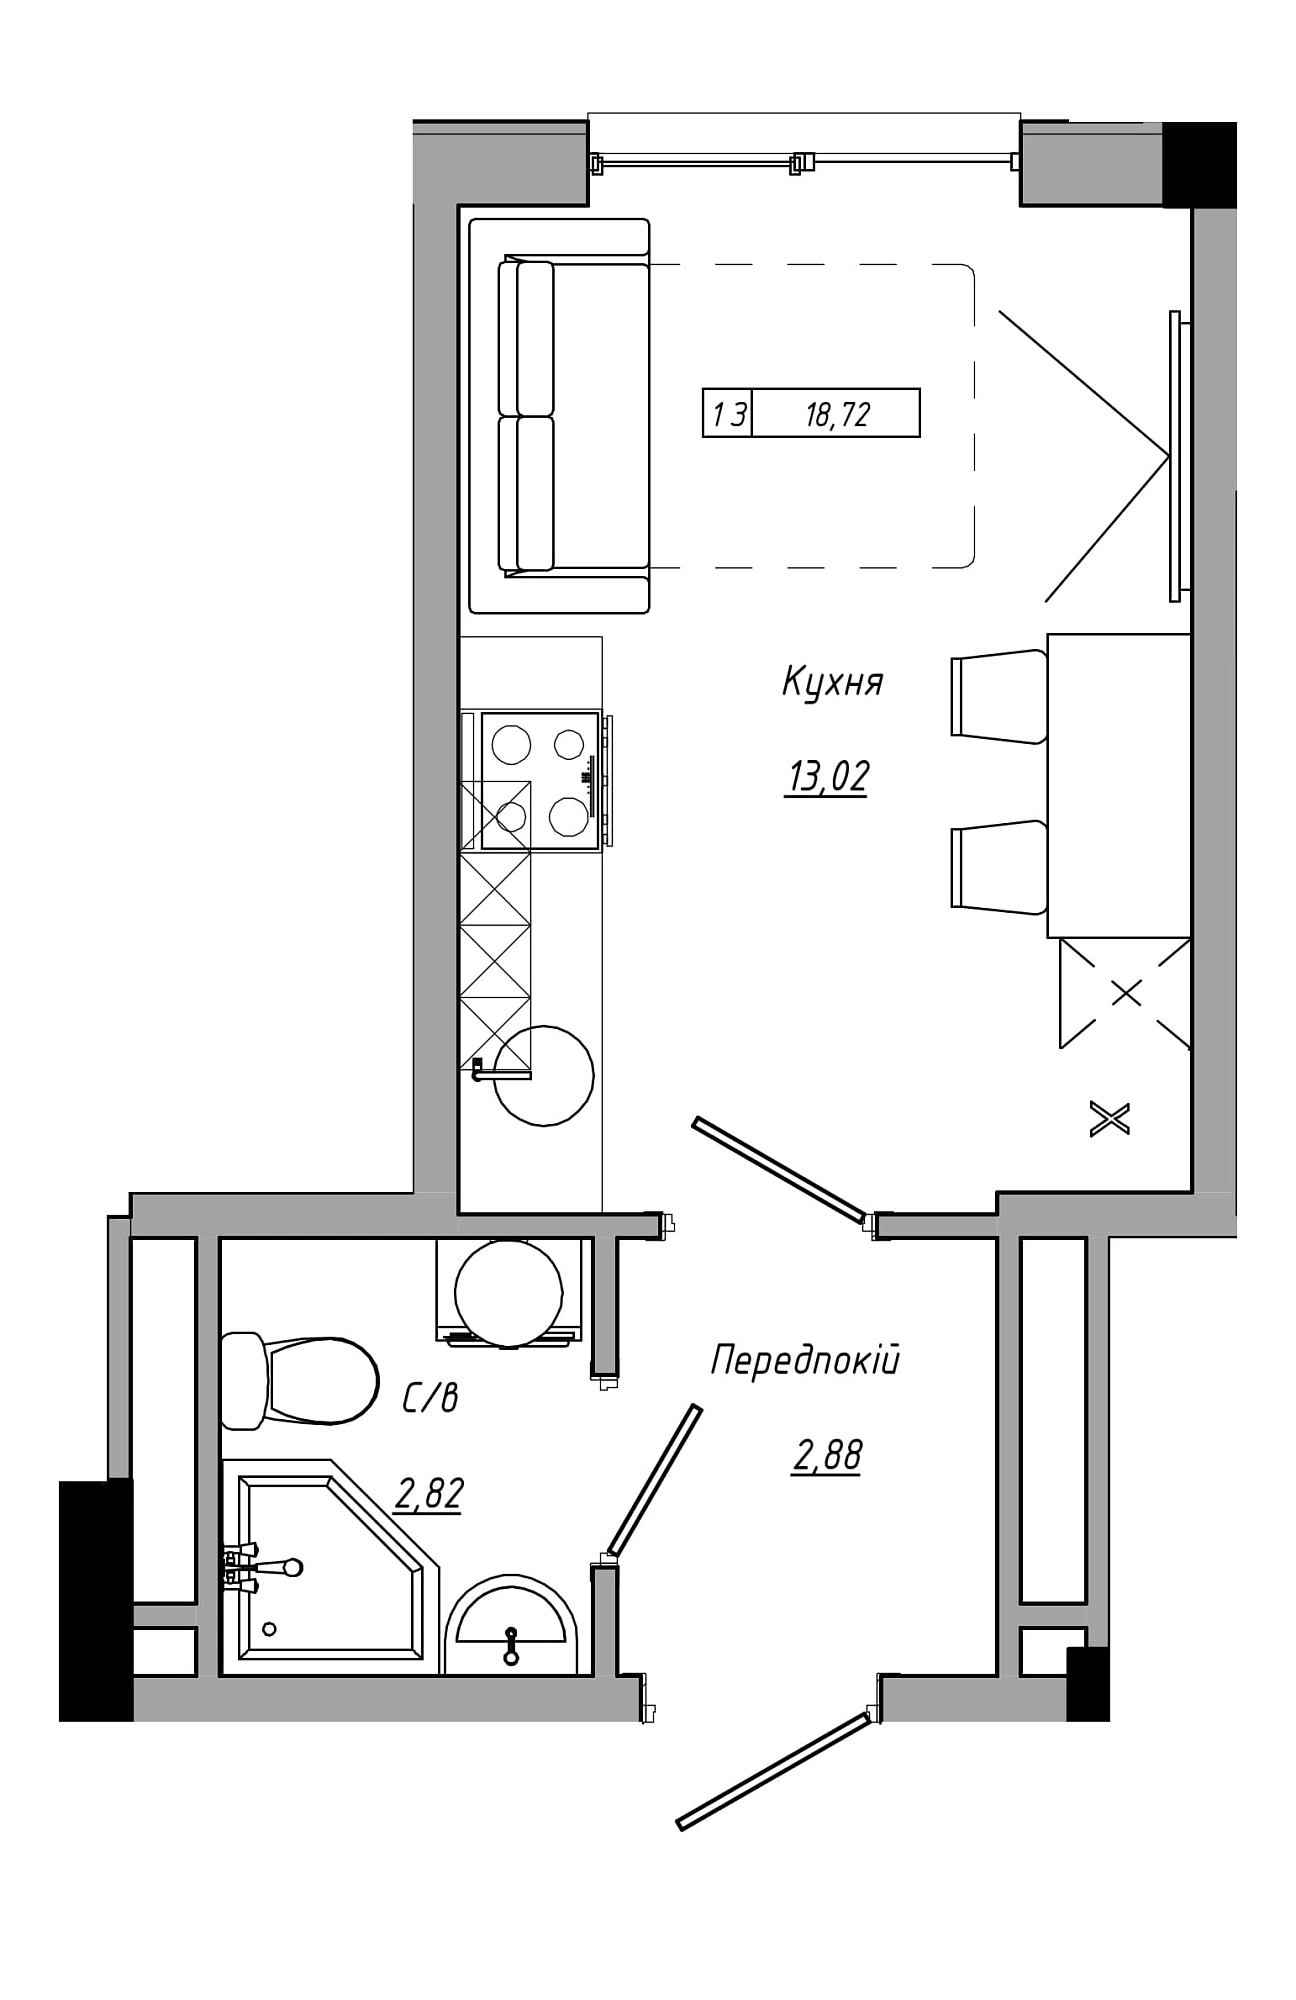 Планування Smart-квартира площею 18.72м2, AB-21-13/00111.